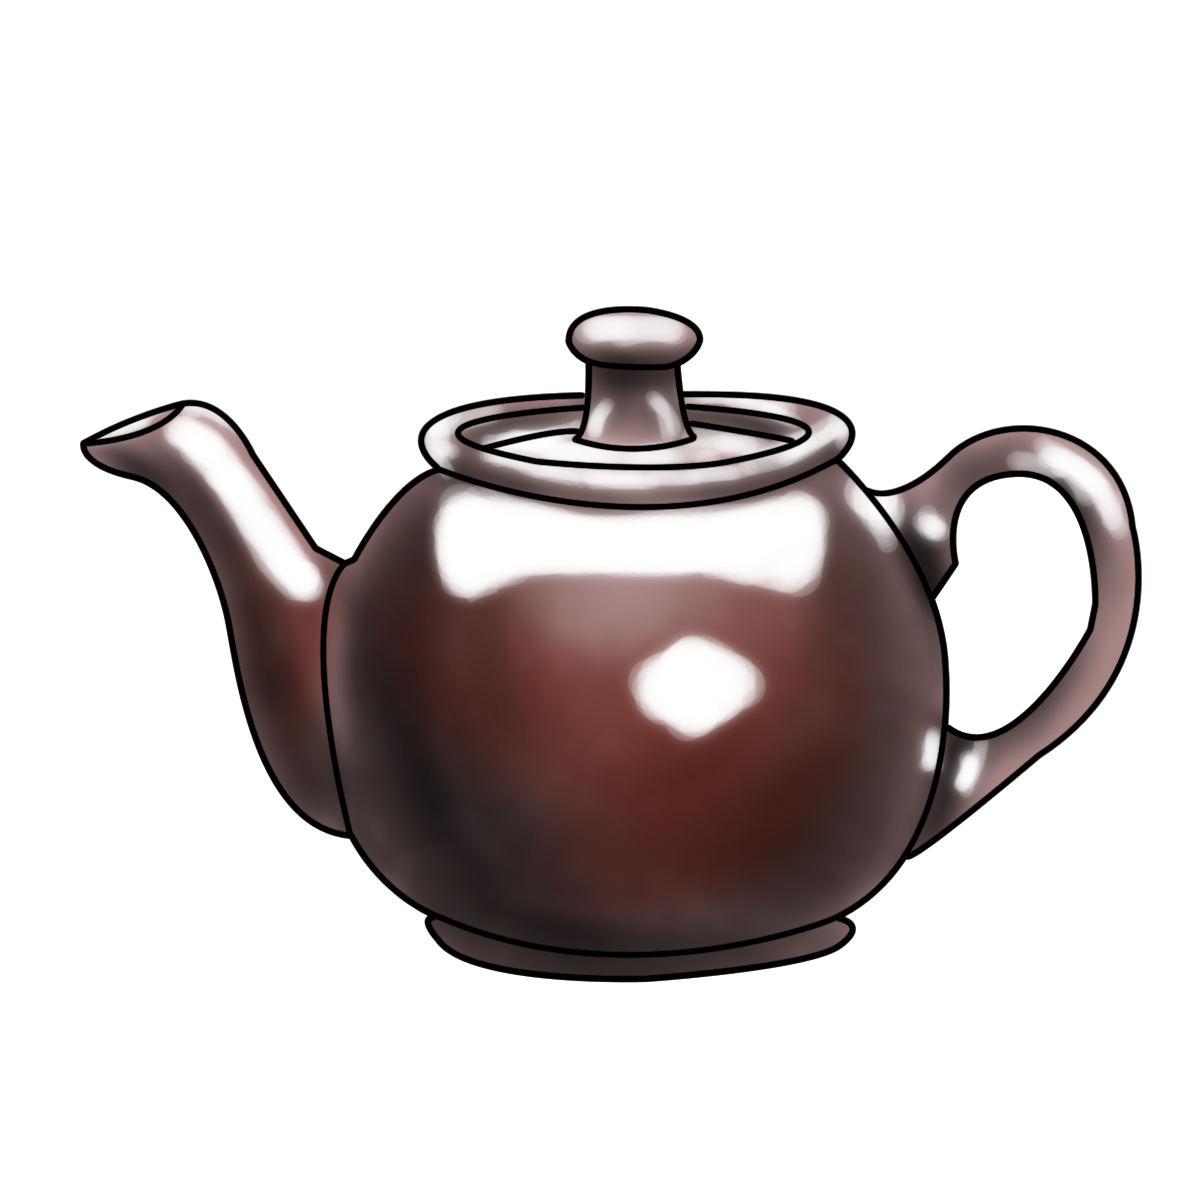 Teapot-step-Step-6.jpg